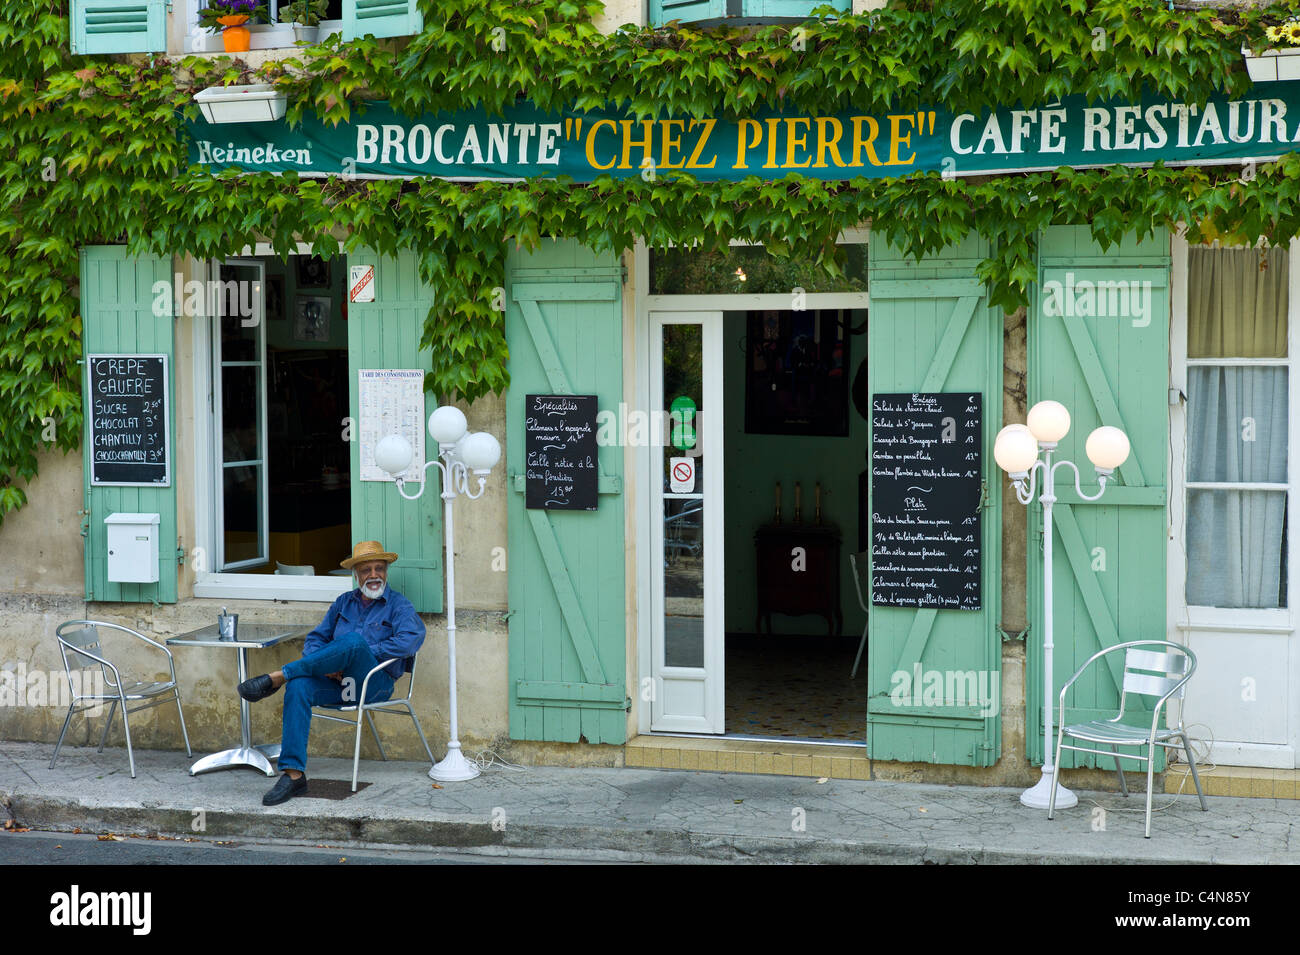 Cafe traditionnel français Chez Pierre avec des menus de la ville de Castelmoron d'Albret dans la région de Bordeaux, Gironde, France Banque D'Images